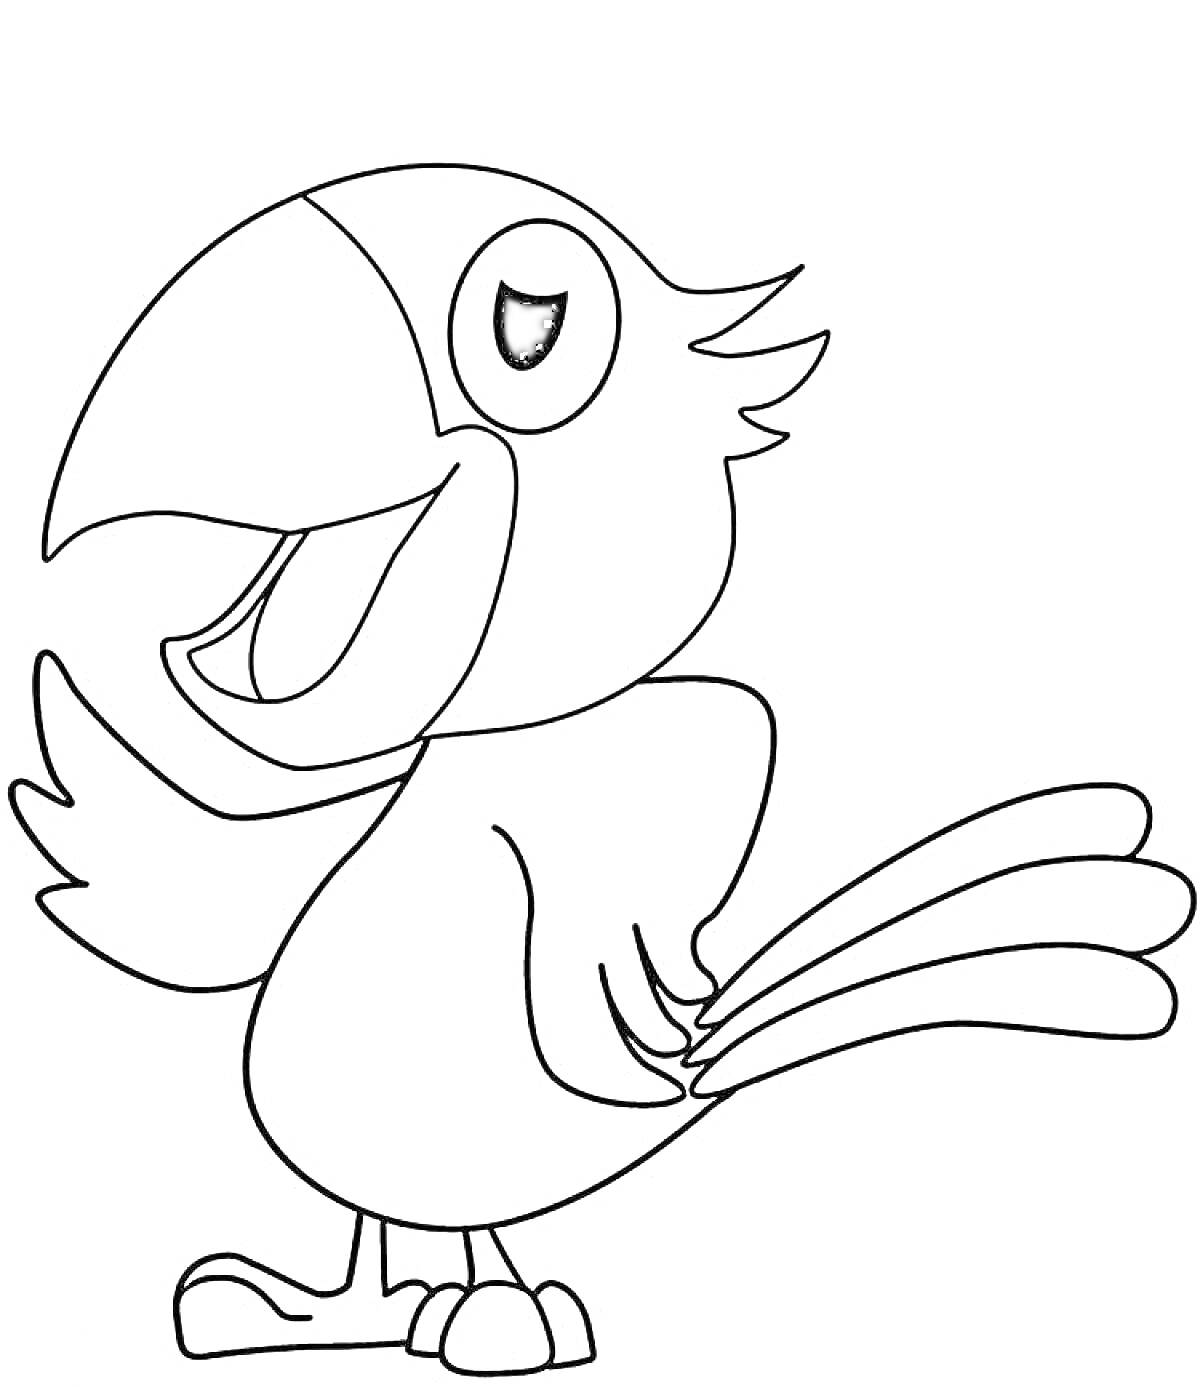 Раскраска Раскраска - попугай с поднятым крылом, улыбкой и хвостом из трех перьев